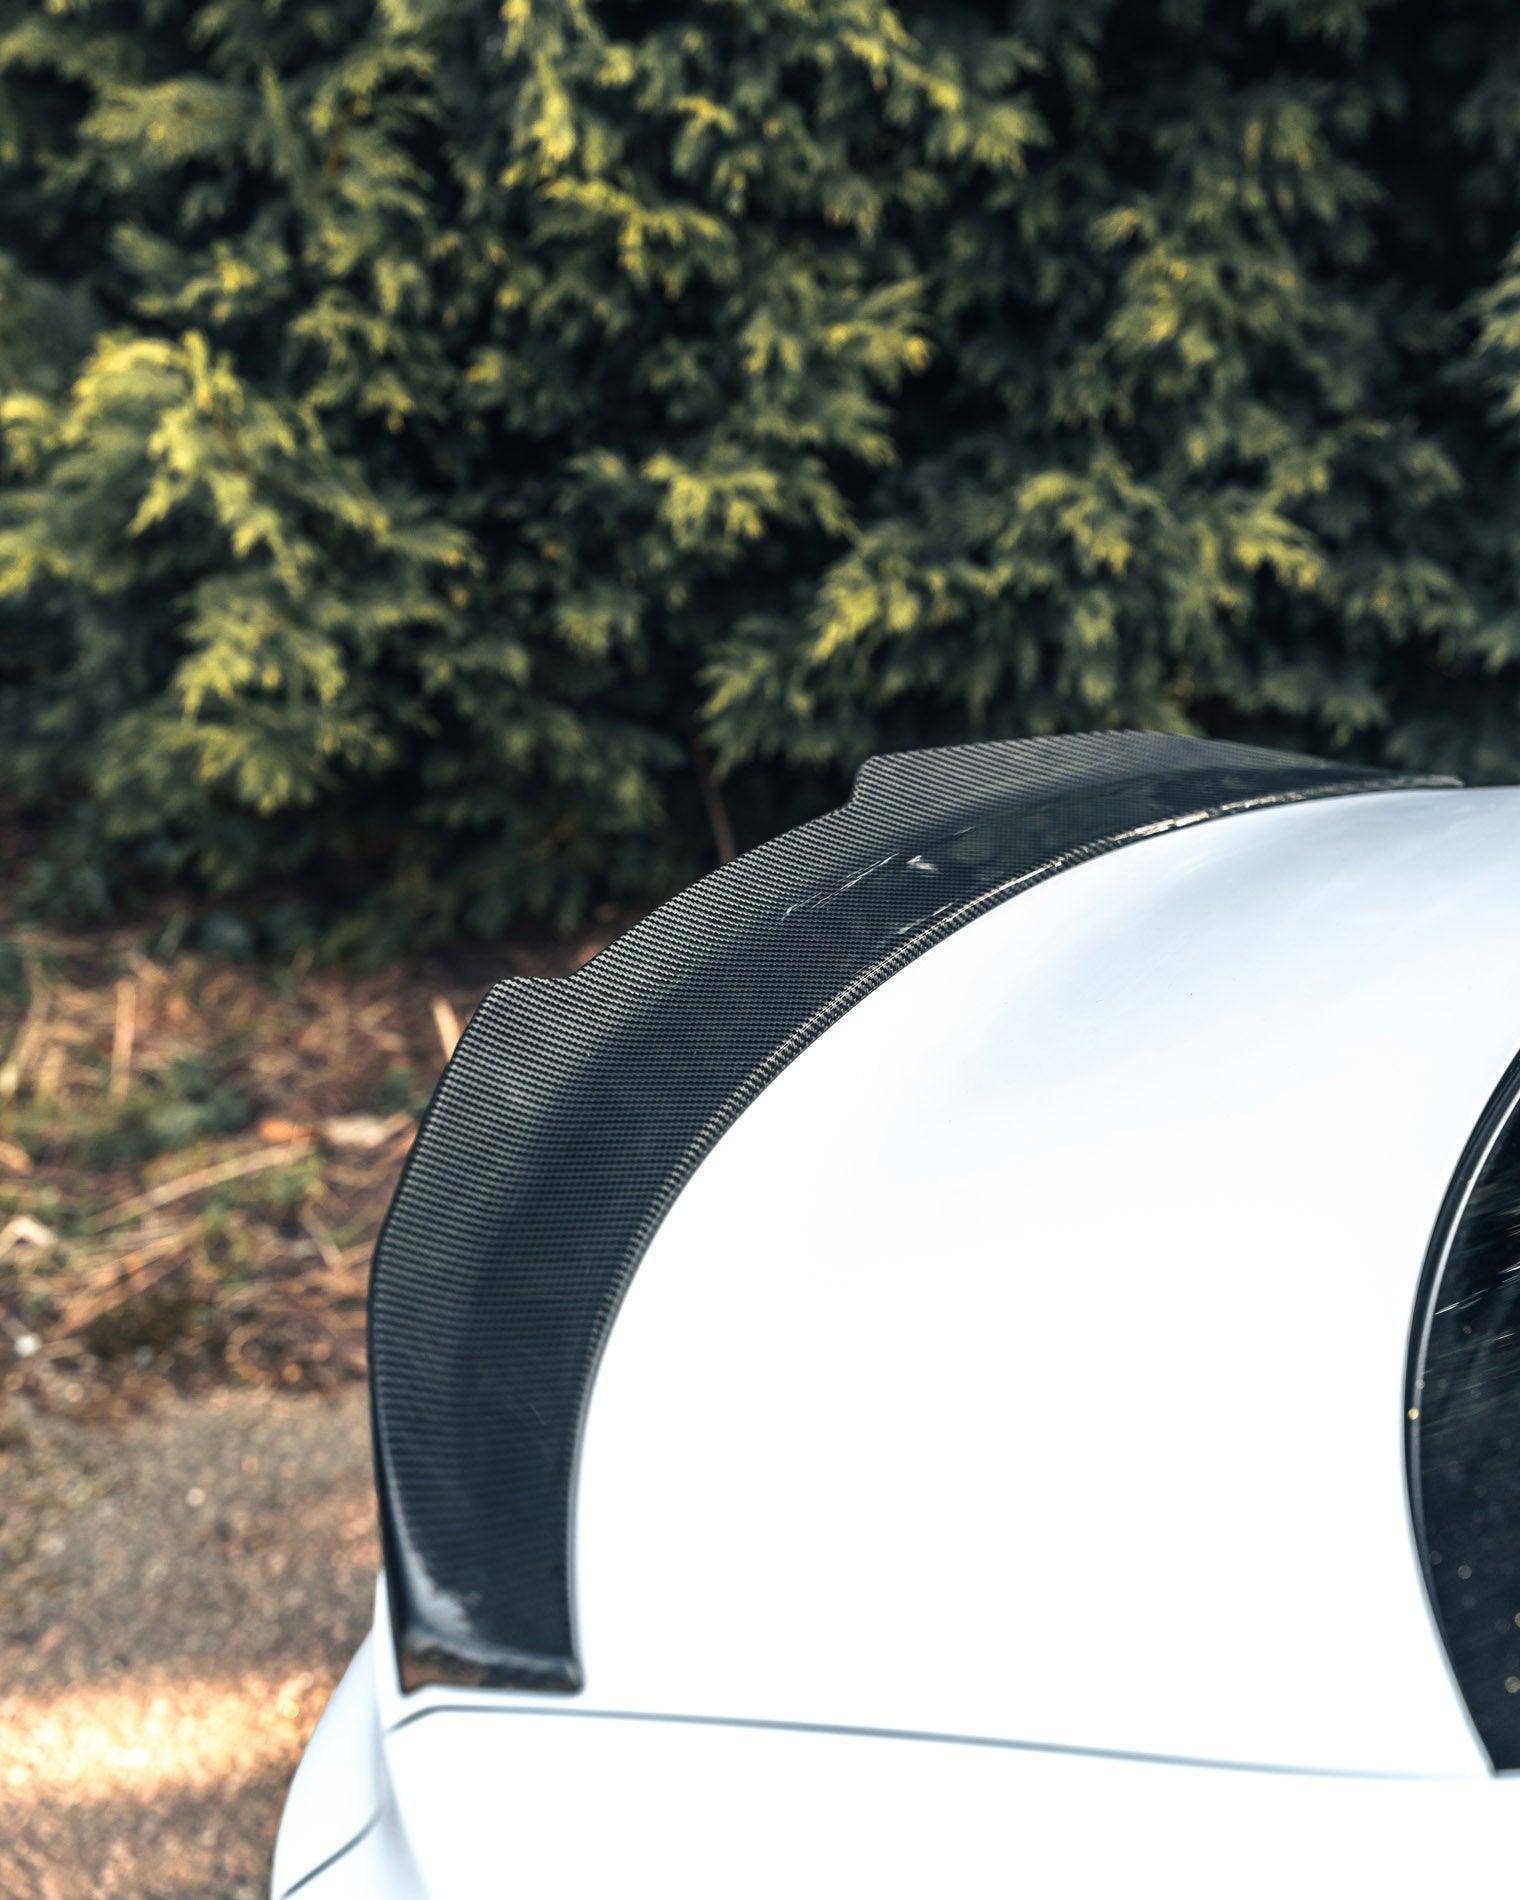 TRE Pre-preg Carbon Fibre Ducktail Rear Spoiler for Audi A3, S3 & RS3 (2021+, 8Y), Rear Spoilers, TRE - AUTOID | Premium Automotive Accessories